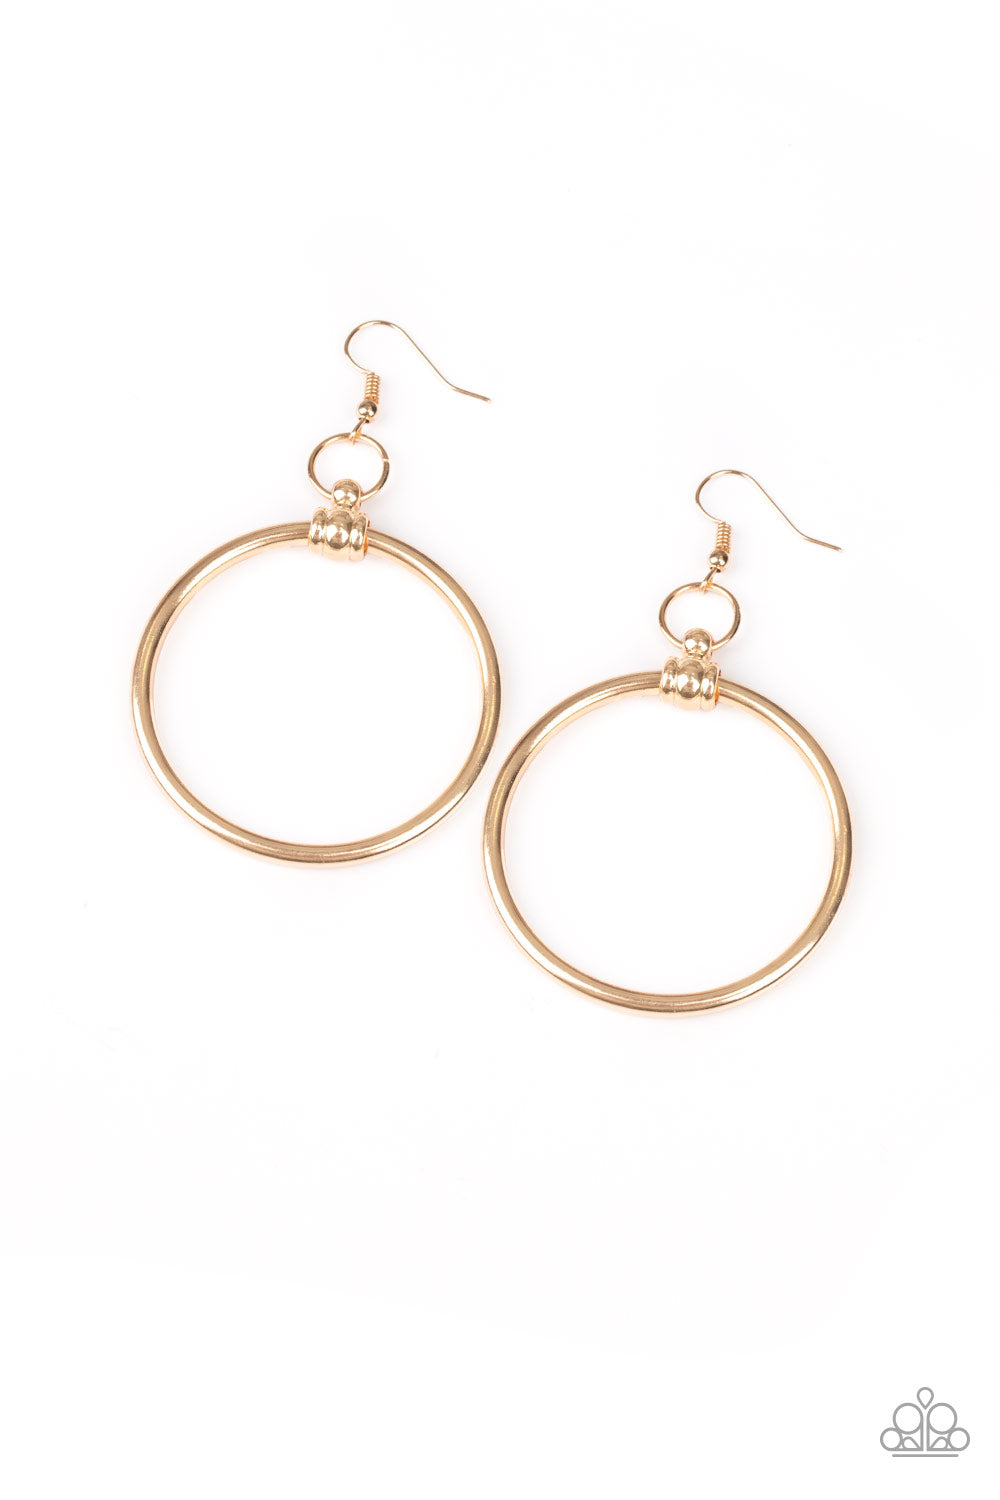 Total Focus - Gold Earrings